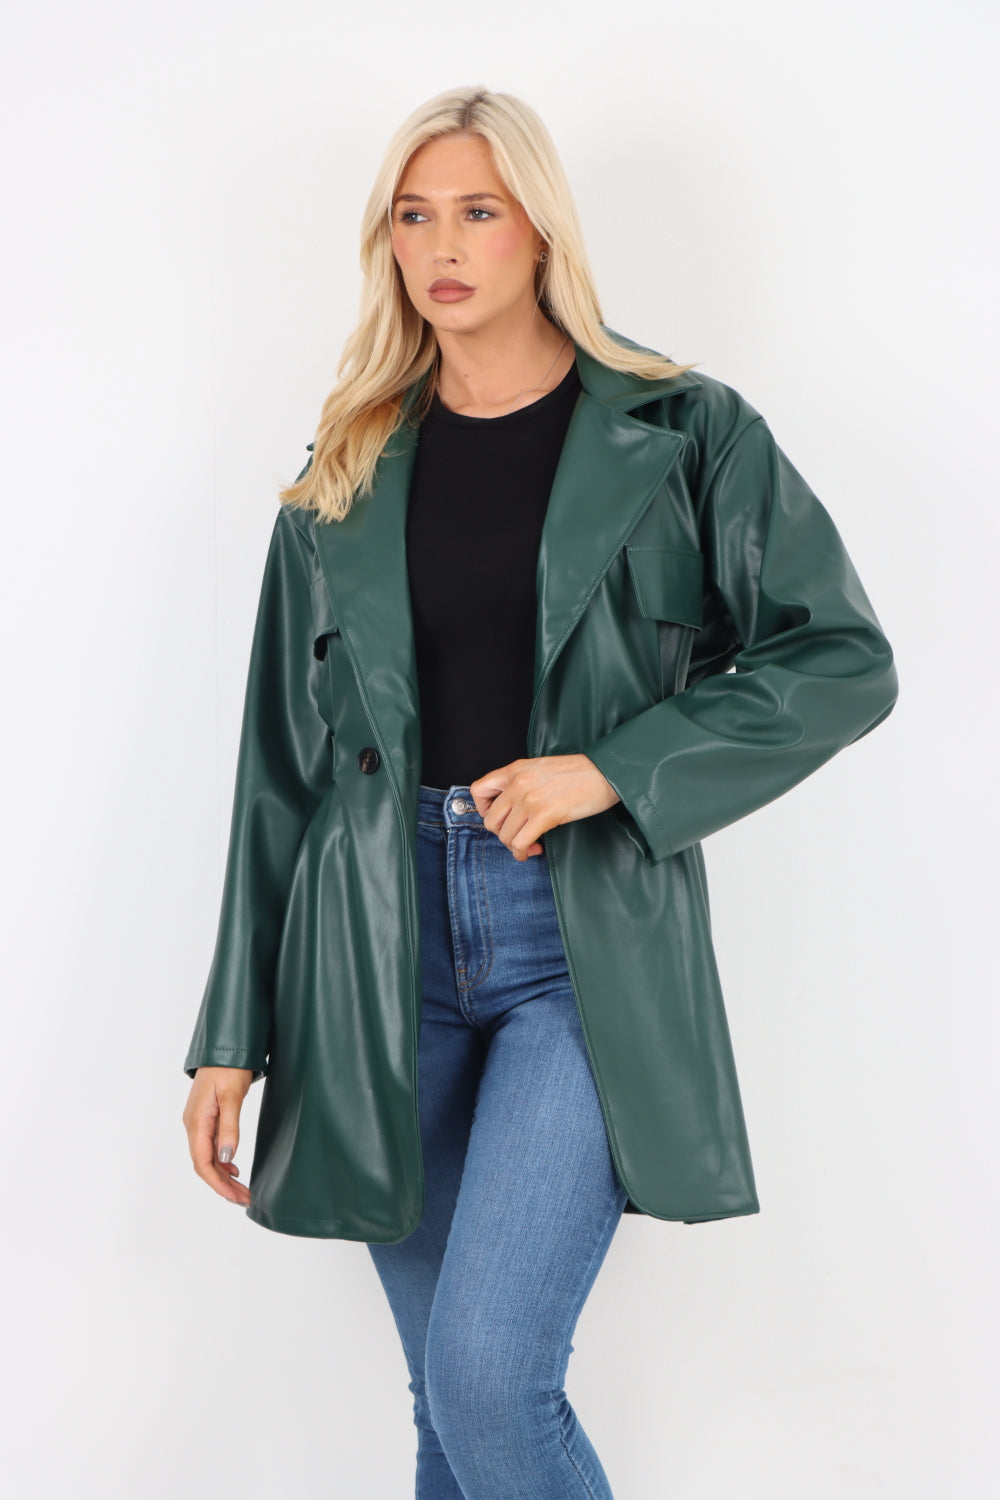 Italian PU Faux Leather Jacket Coat